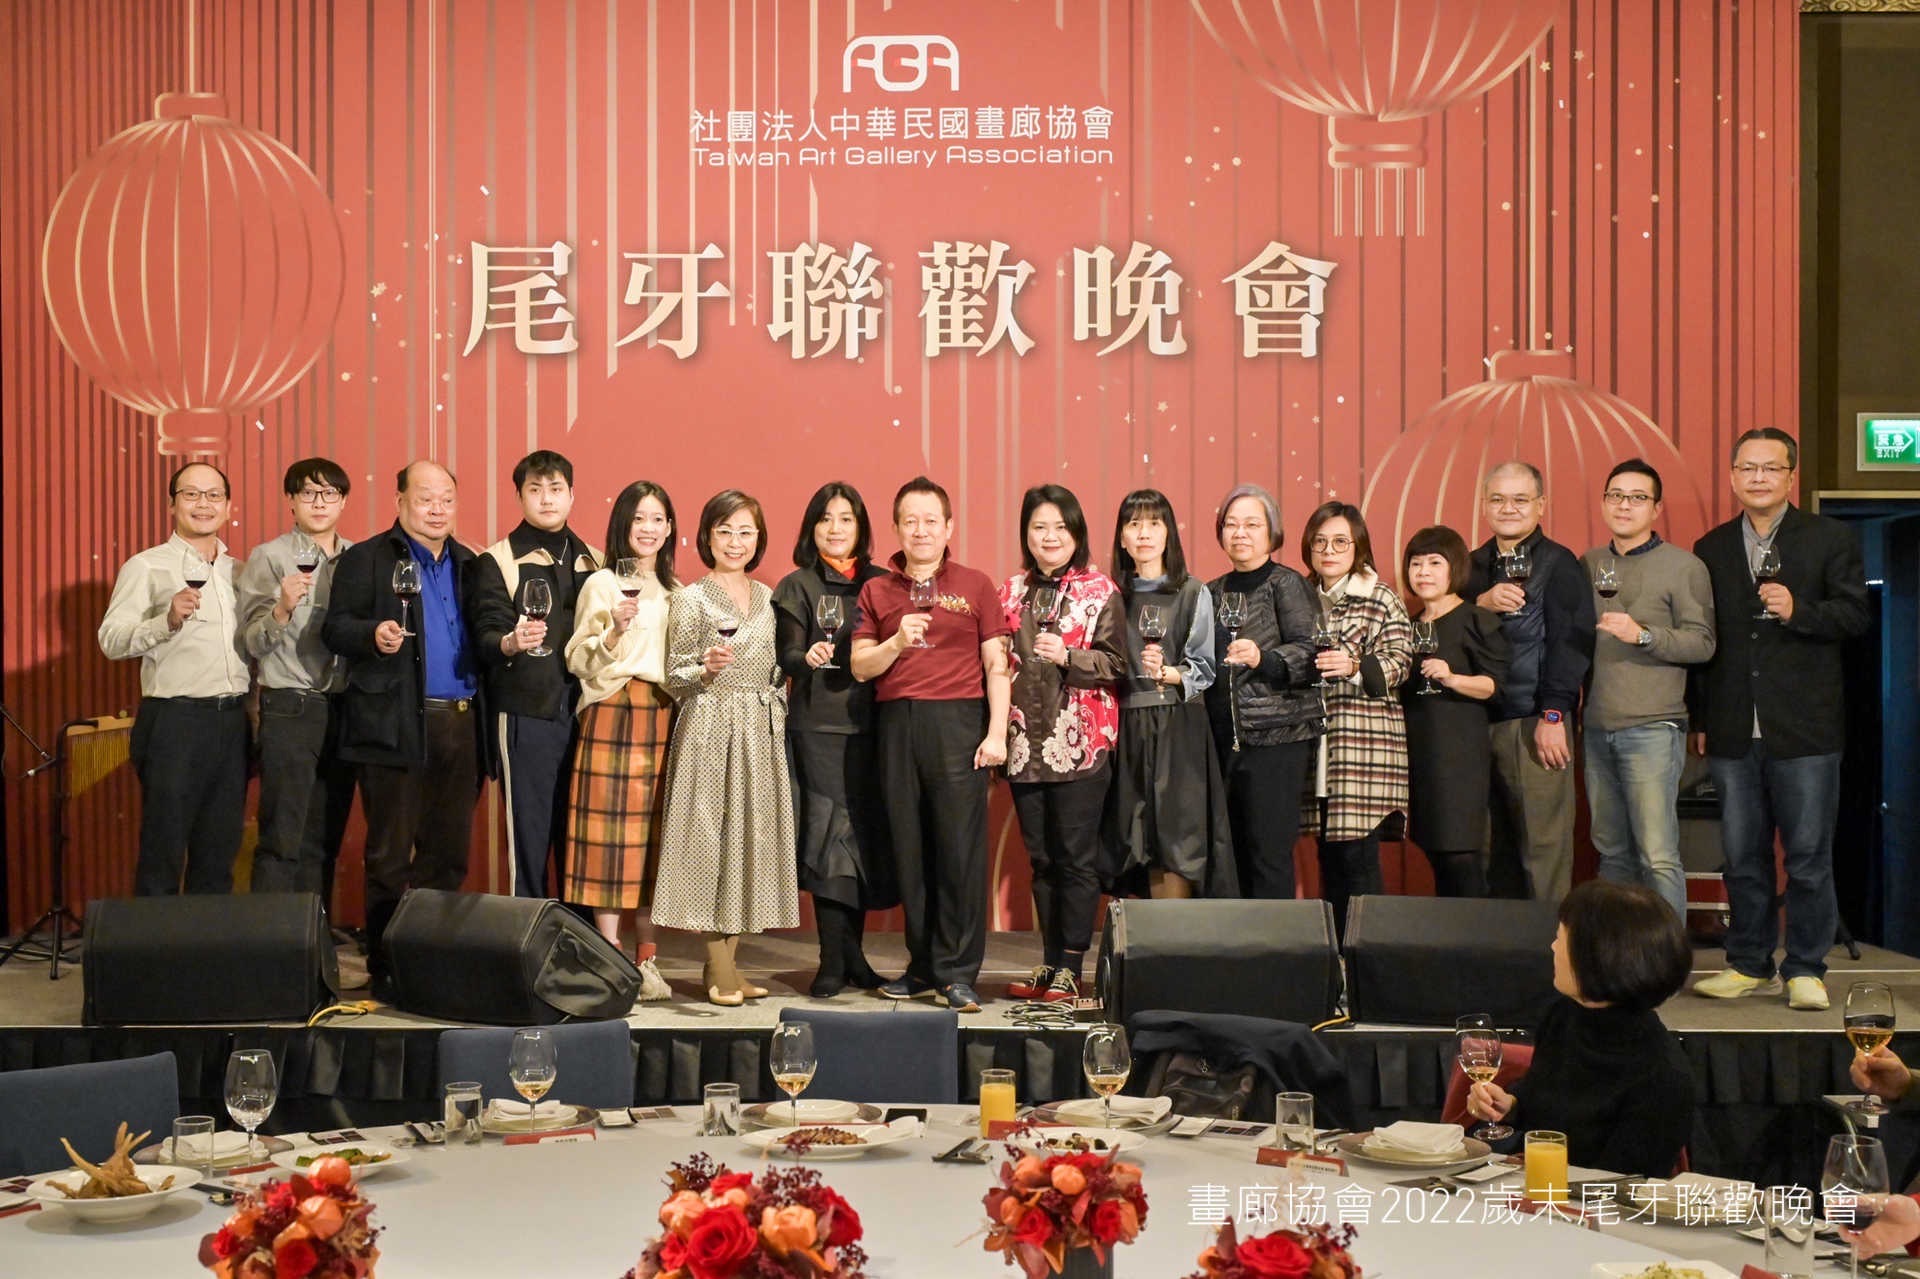 展望下一個30週年  社團法人中華民國畫廊協會 祝福2023年能夠更加豐收 !